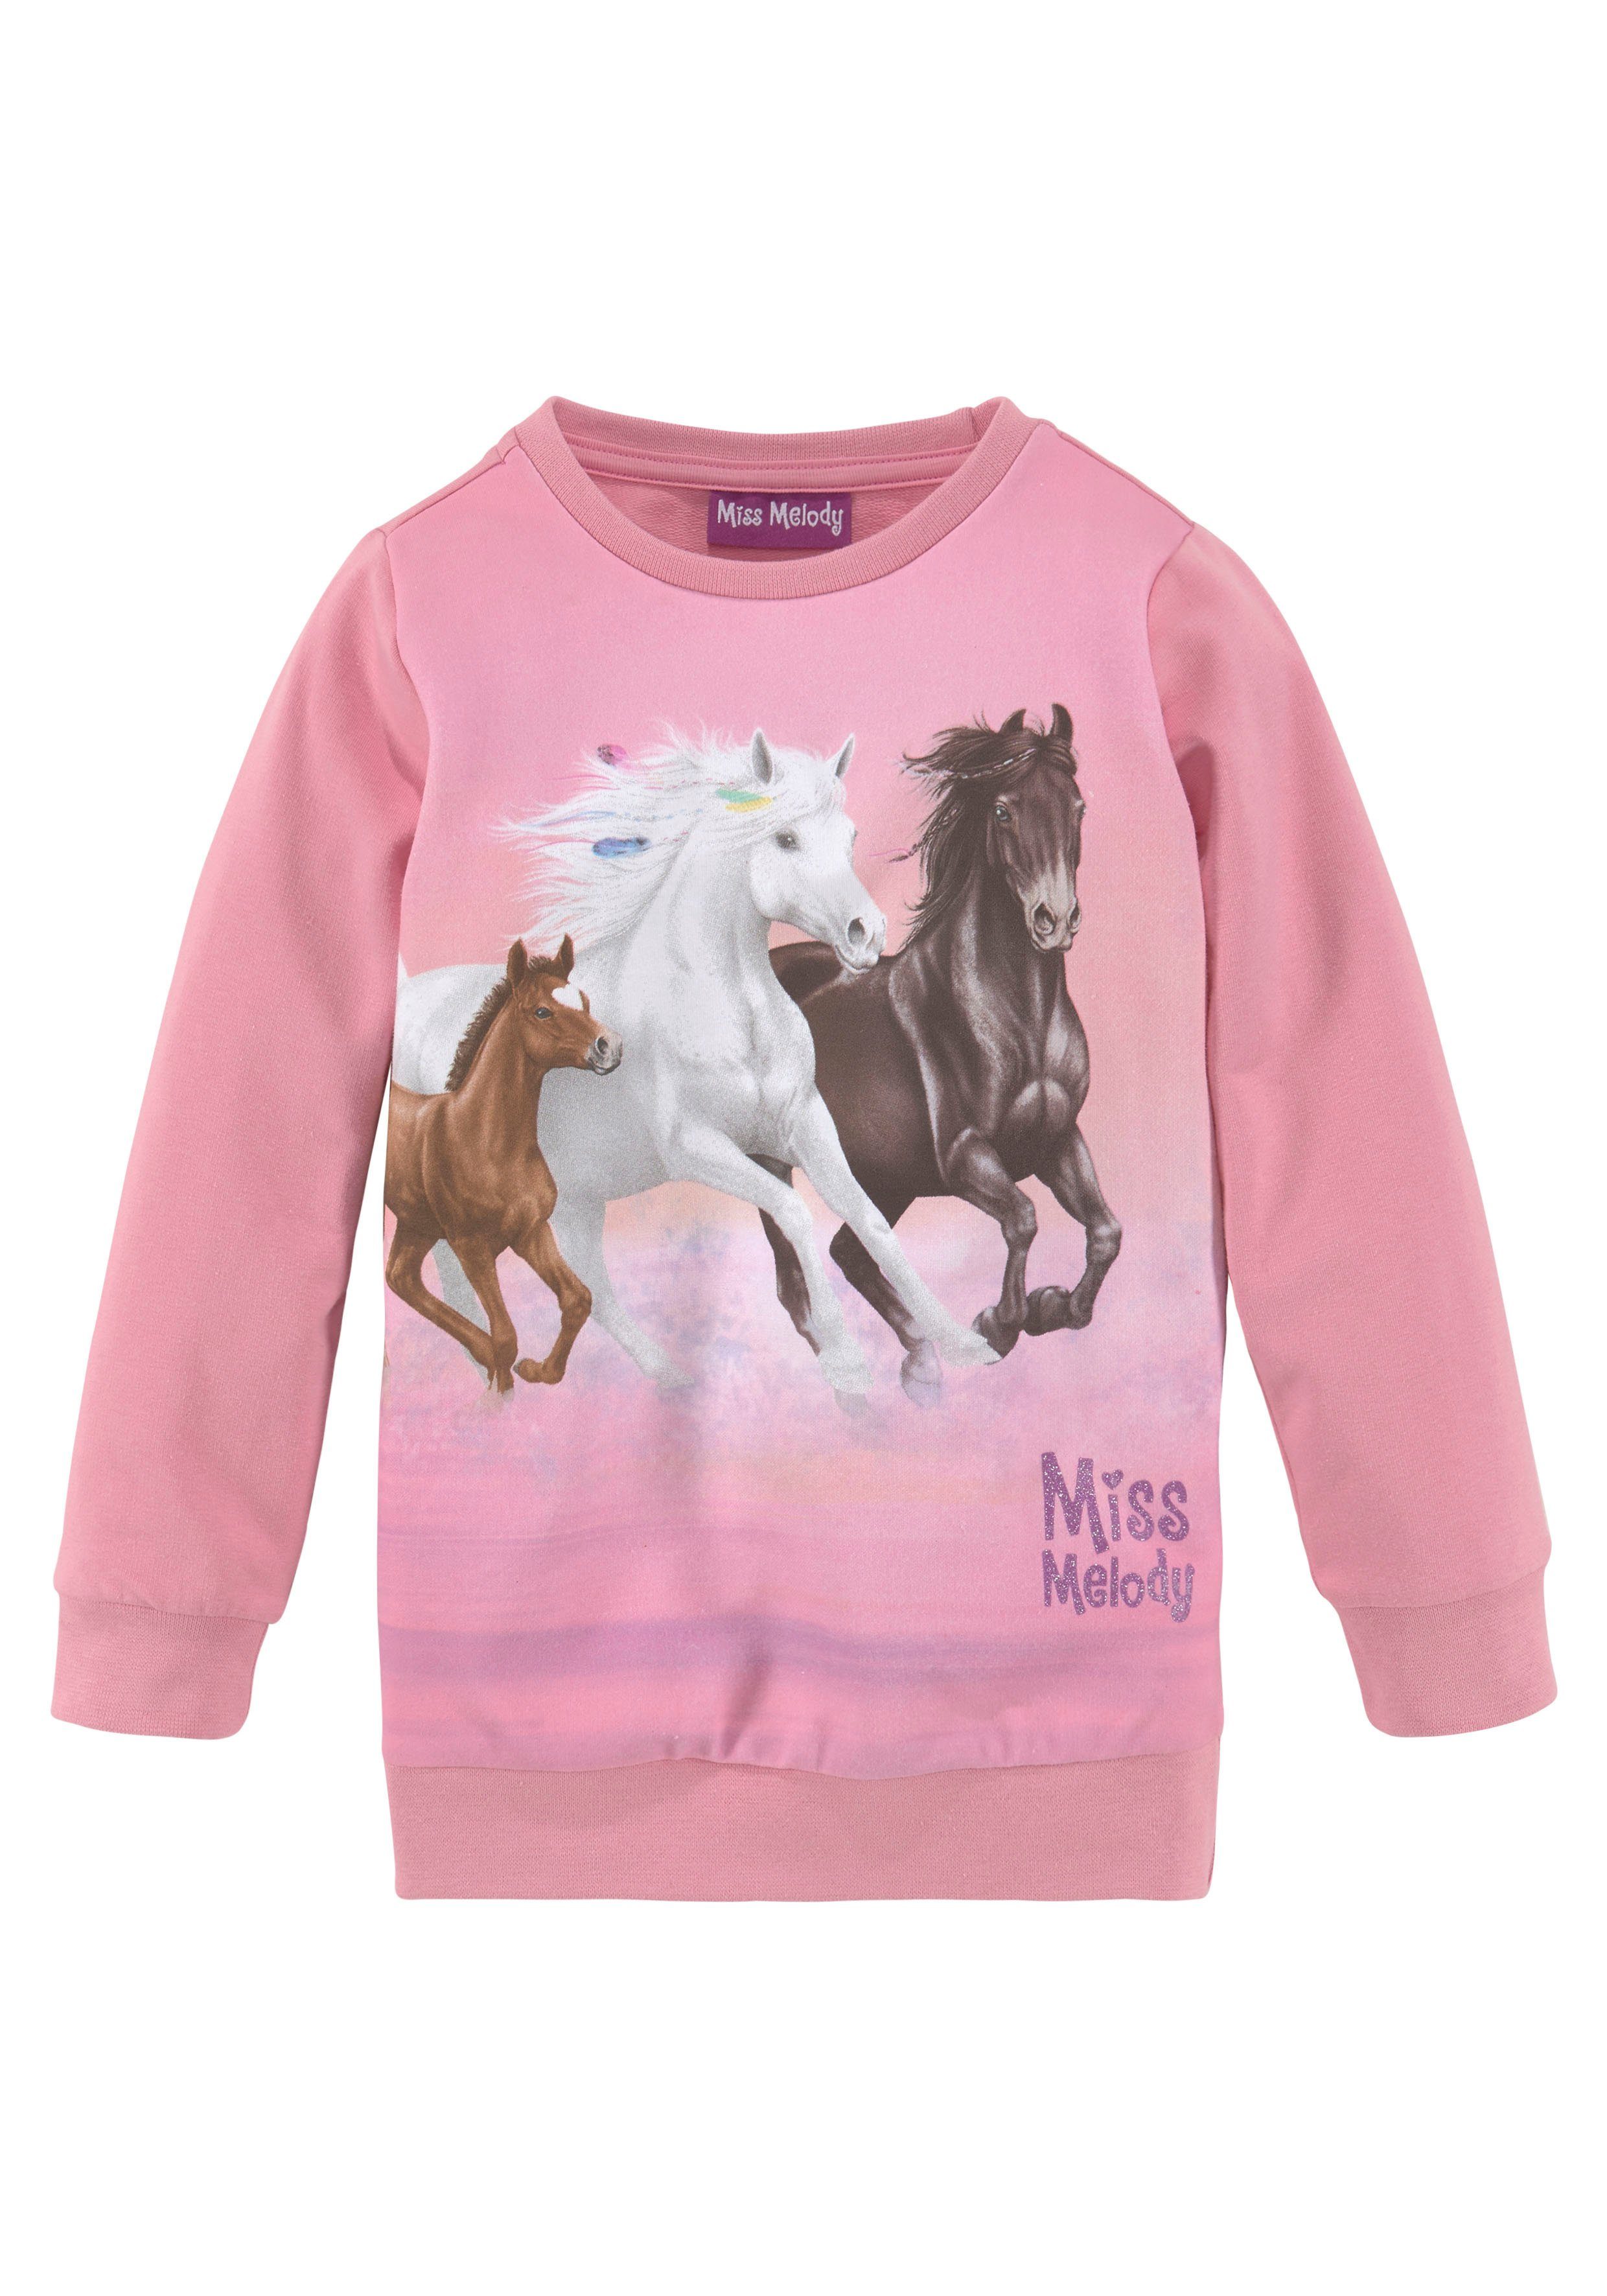 Longsweatshirt Pferdefreunde für Miss Melody